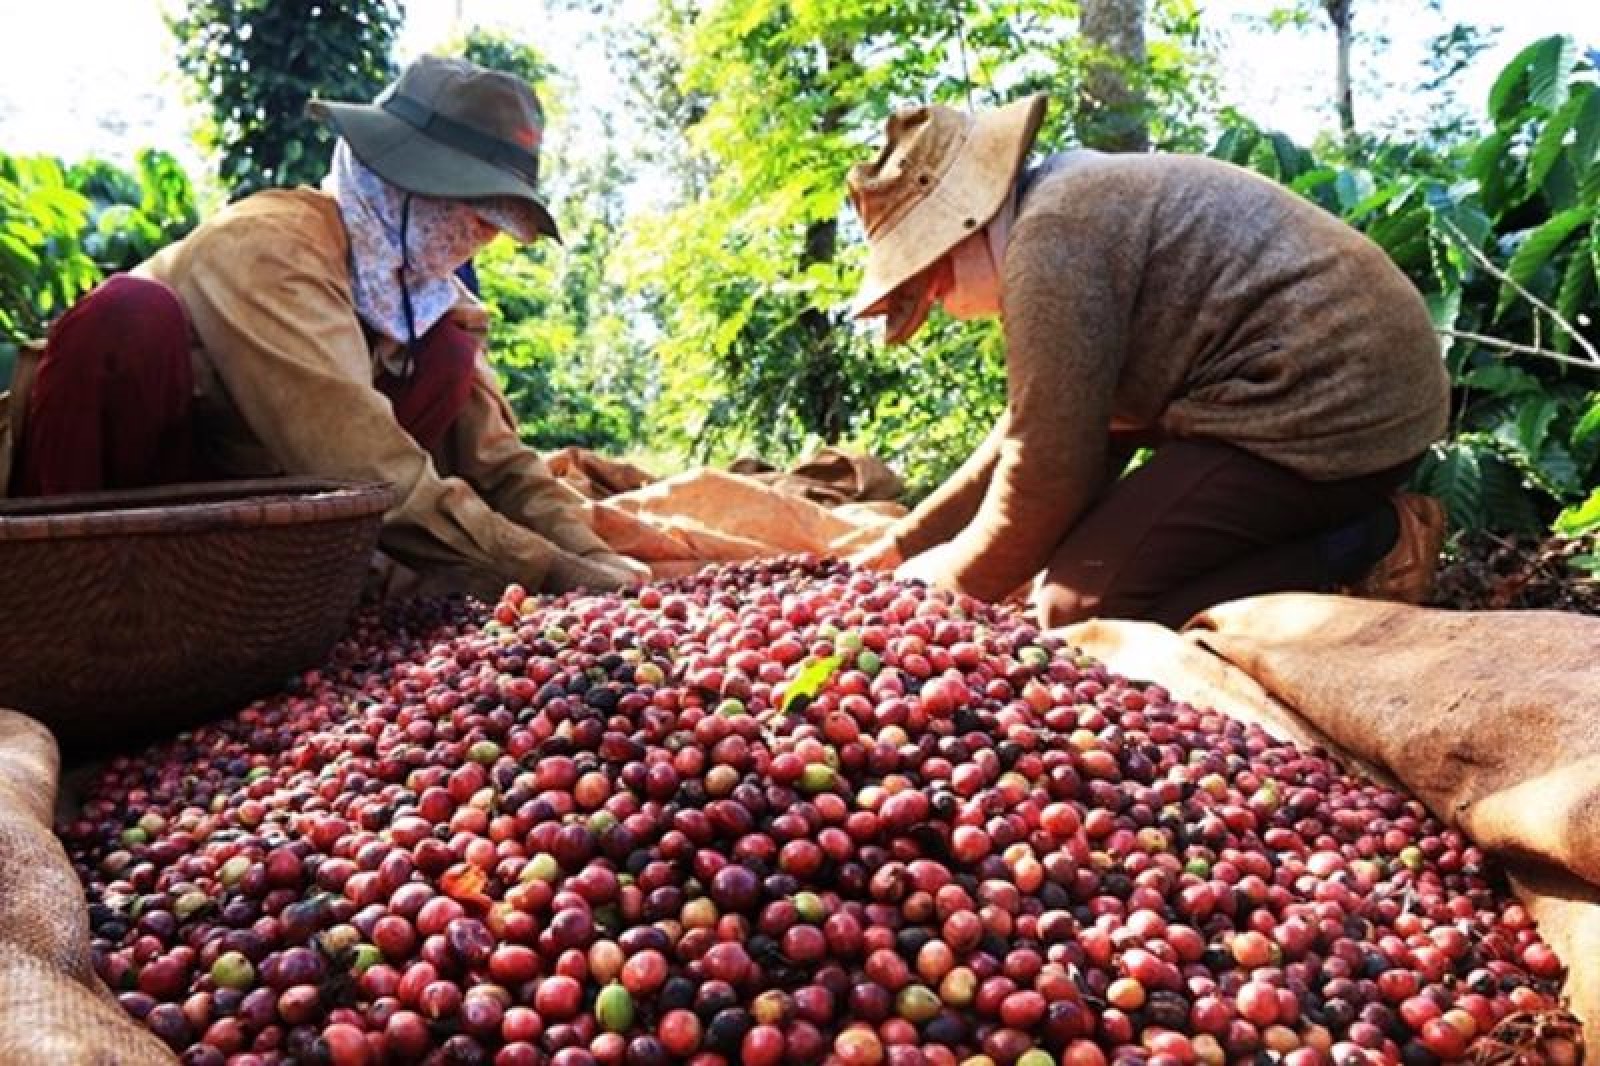 Đặc tính biến động của giá cà phê Việt Nam xuất khẩu và cơ chế truyền dẫn của các nhân tố ảnh hưởng: Cách tiếp cận chuyển đổi trạng thái Markov 